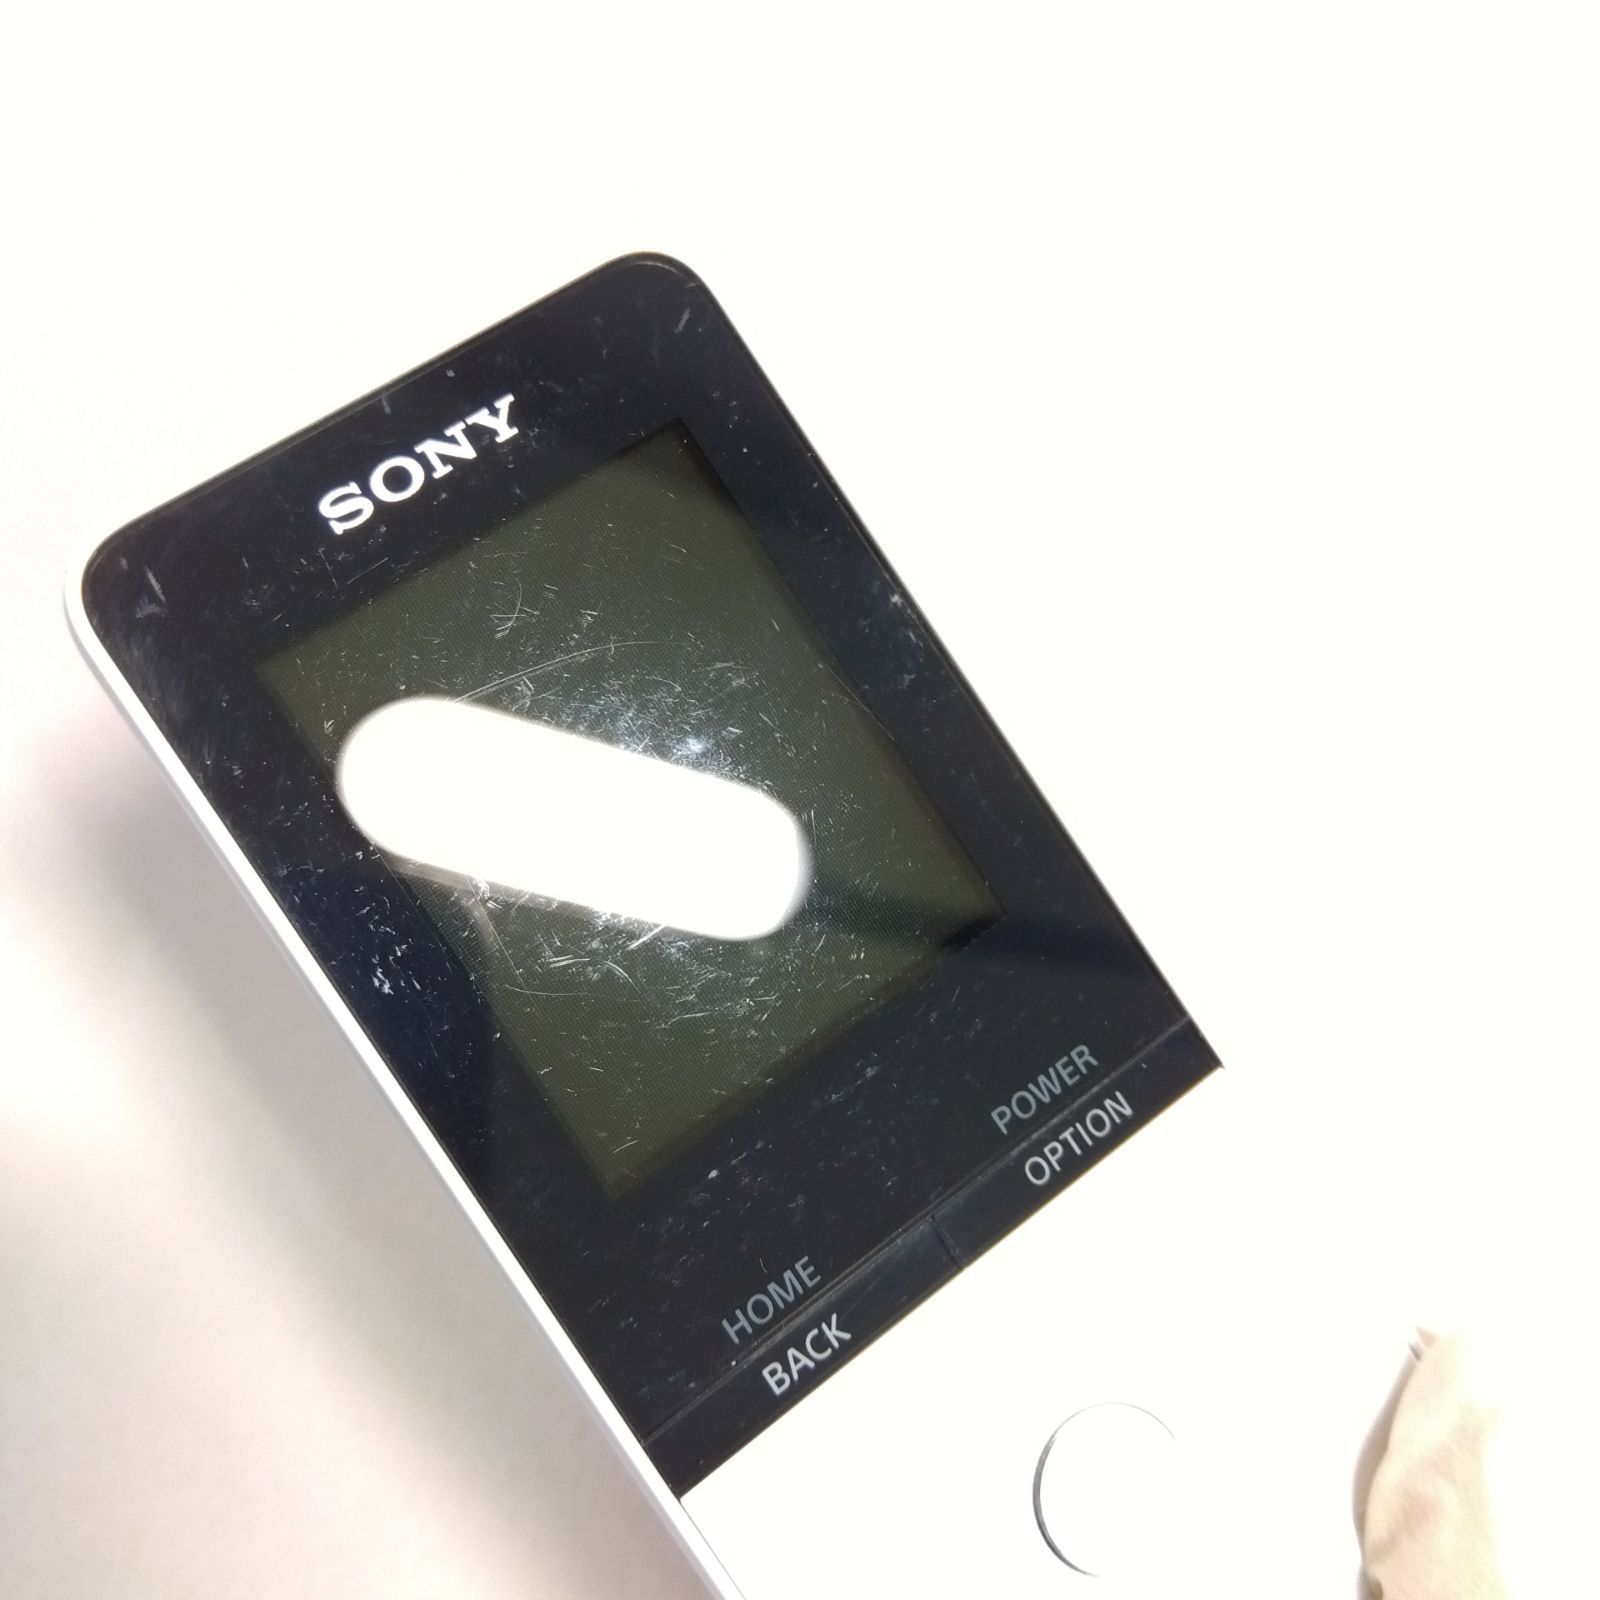 ソニー(SONY) ウォークマン Sシリーズ 16GB NW-S315 : MP3プレーヤー Bluetooth対応  ホワイト